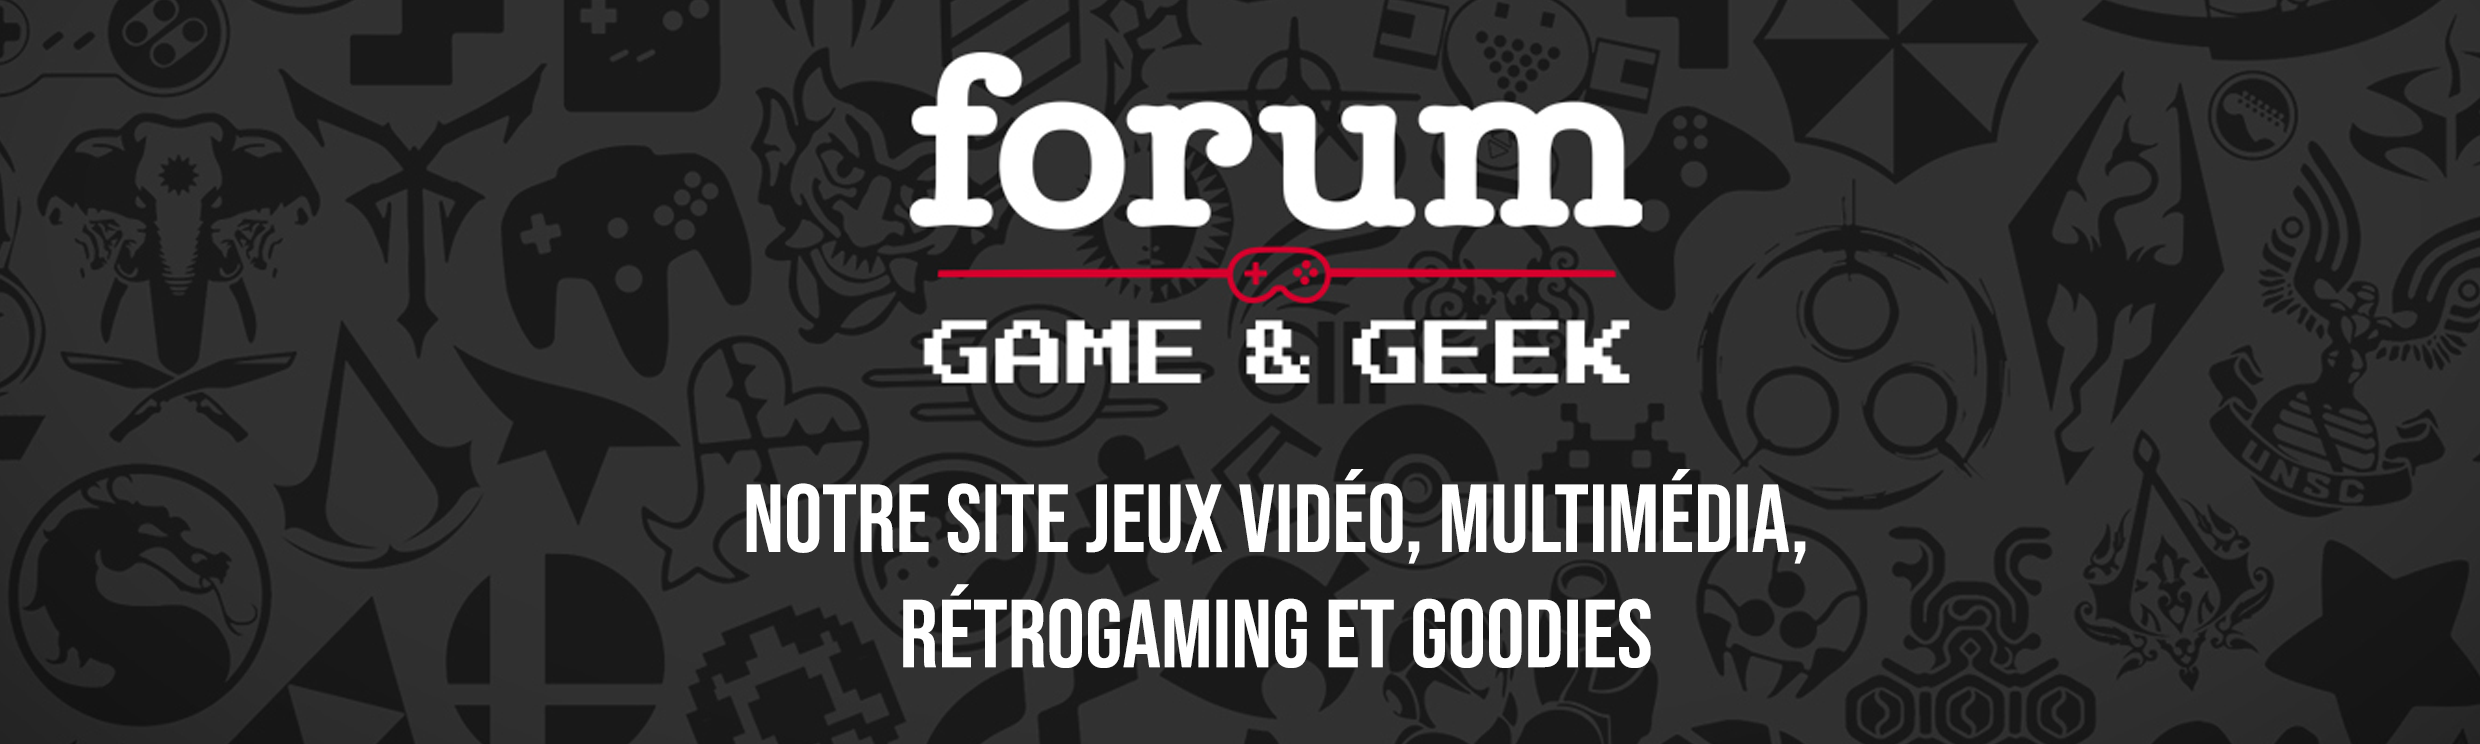 Boutique forum game & geek